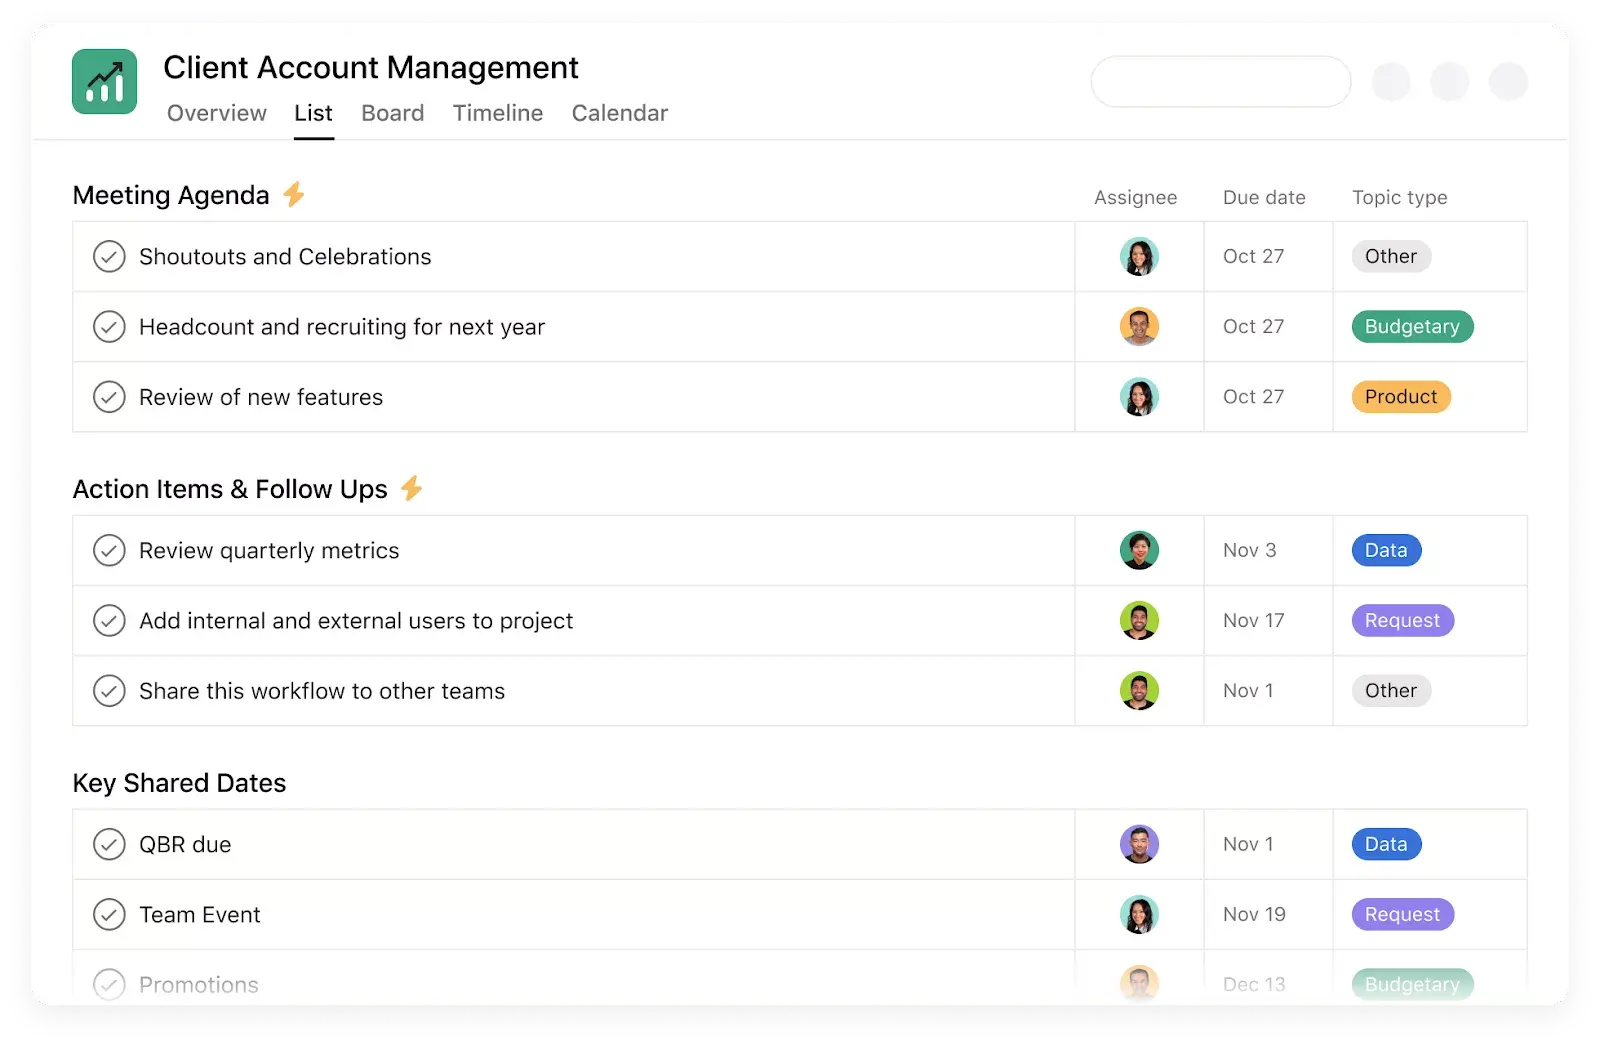 Captura de tela do modelo de gestão de contas dos clientes da Stride